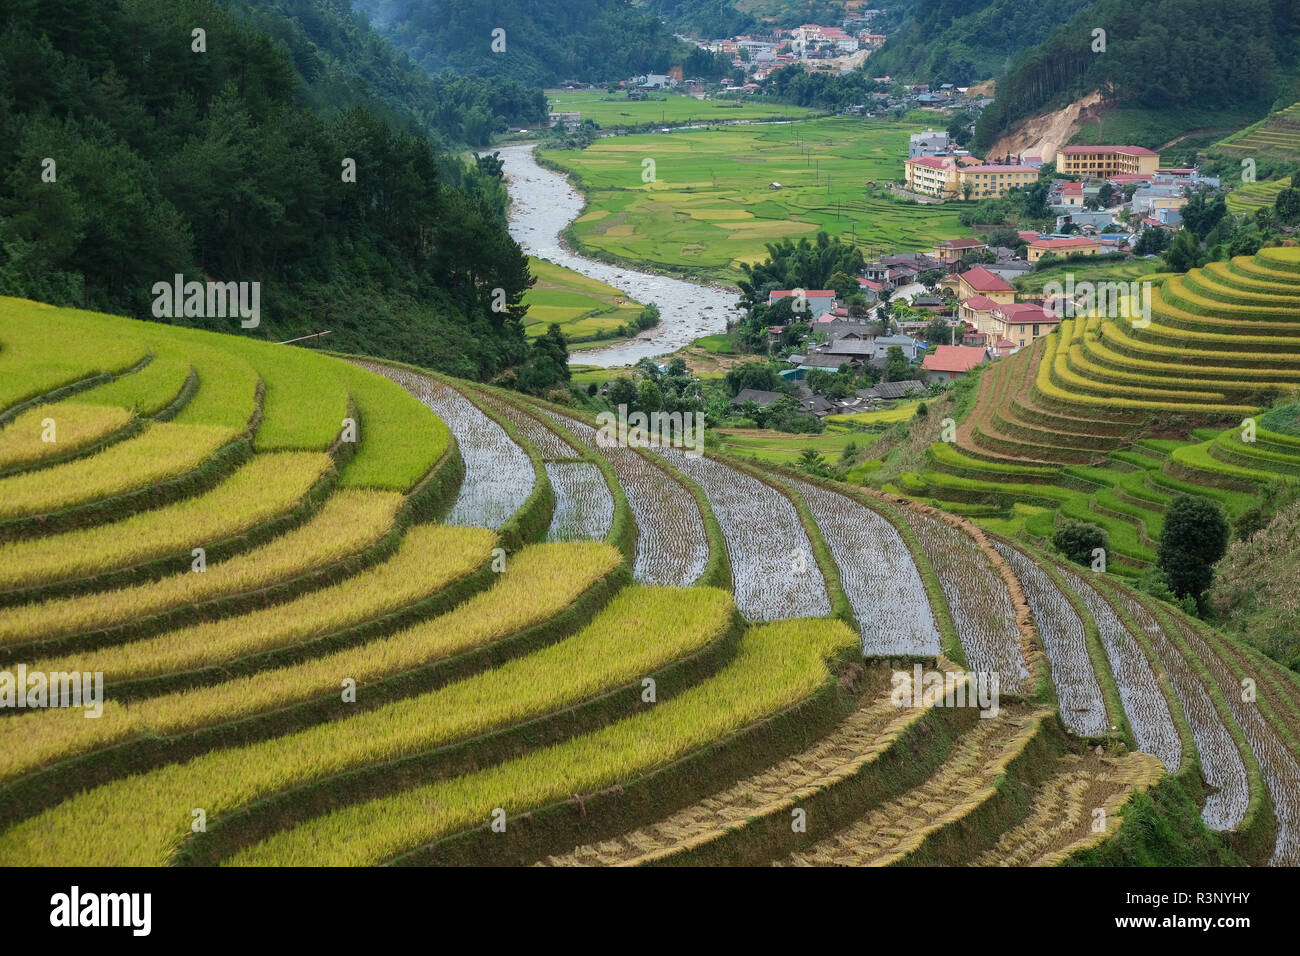 Vue aérienne du paysage du Vietnam. Champ de riz jaune au village, campagne au Vietnam. Image libre de haute qualité photo image avec des riz jaune f Banque D'Images